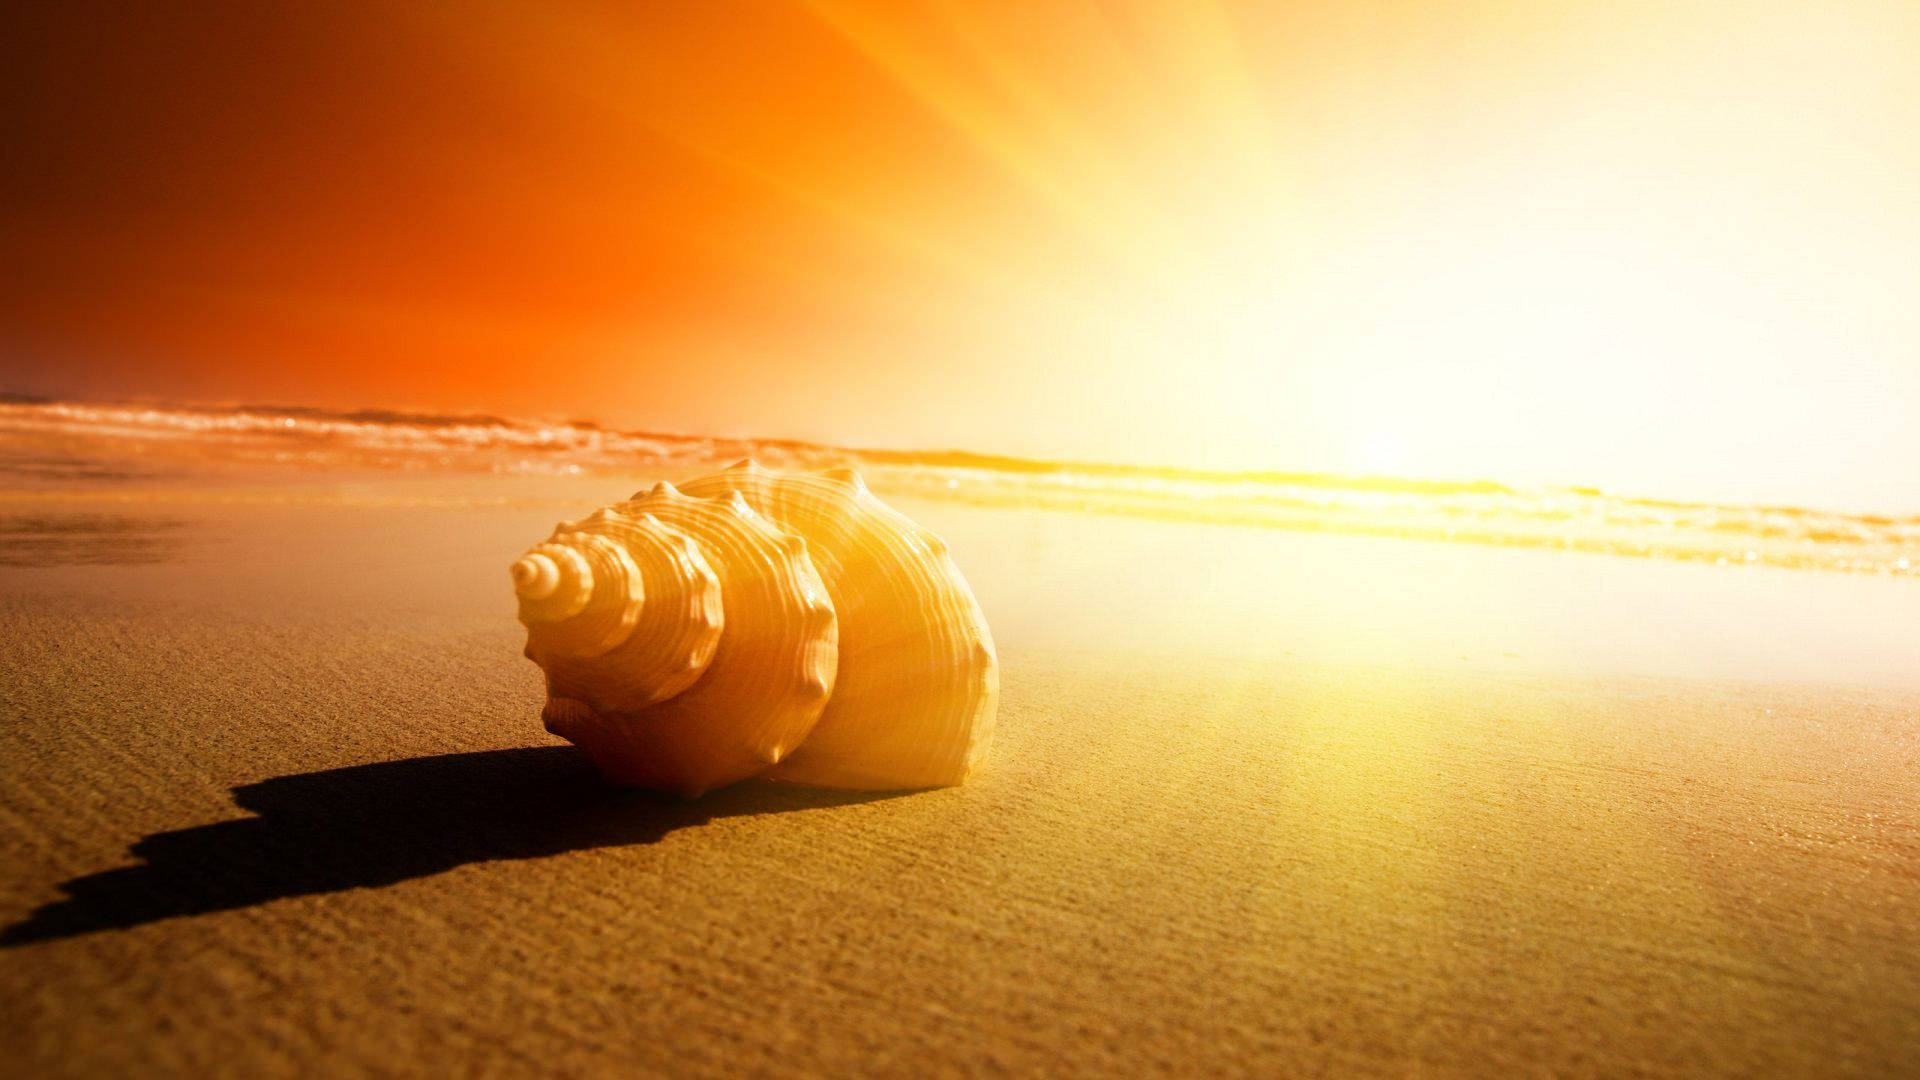 Rising Sun Snail On The Beach